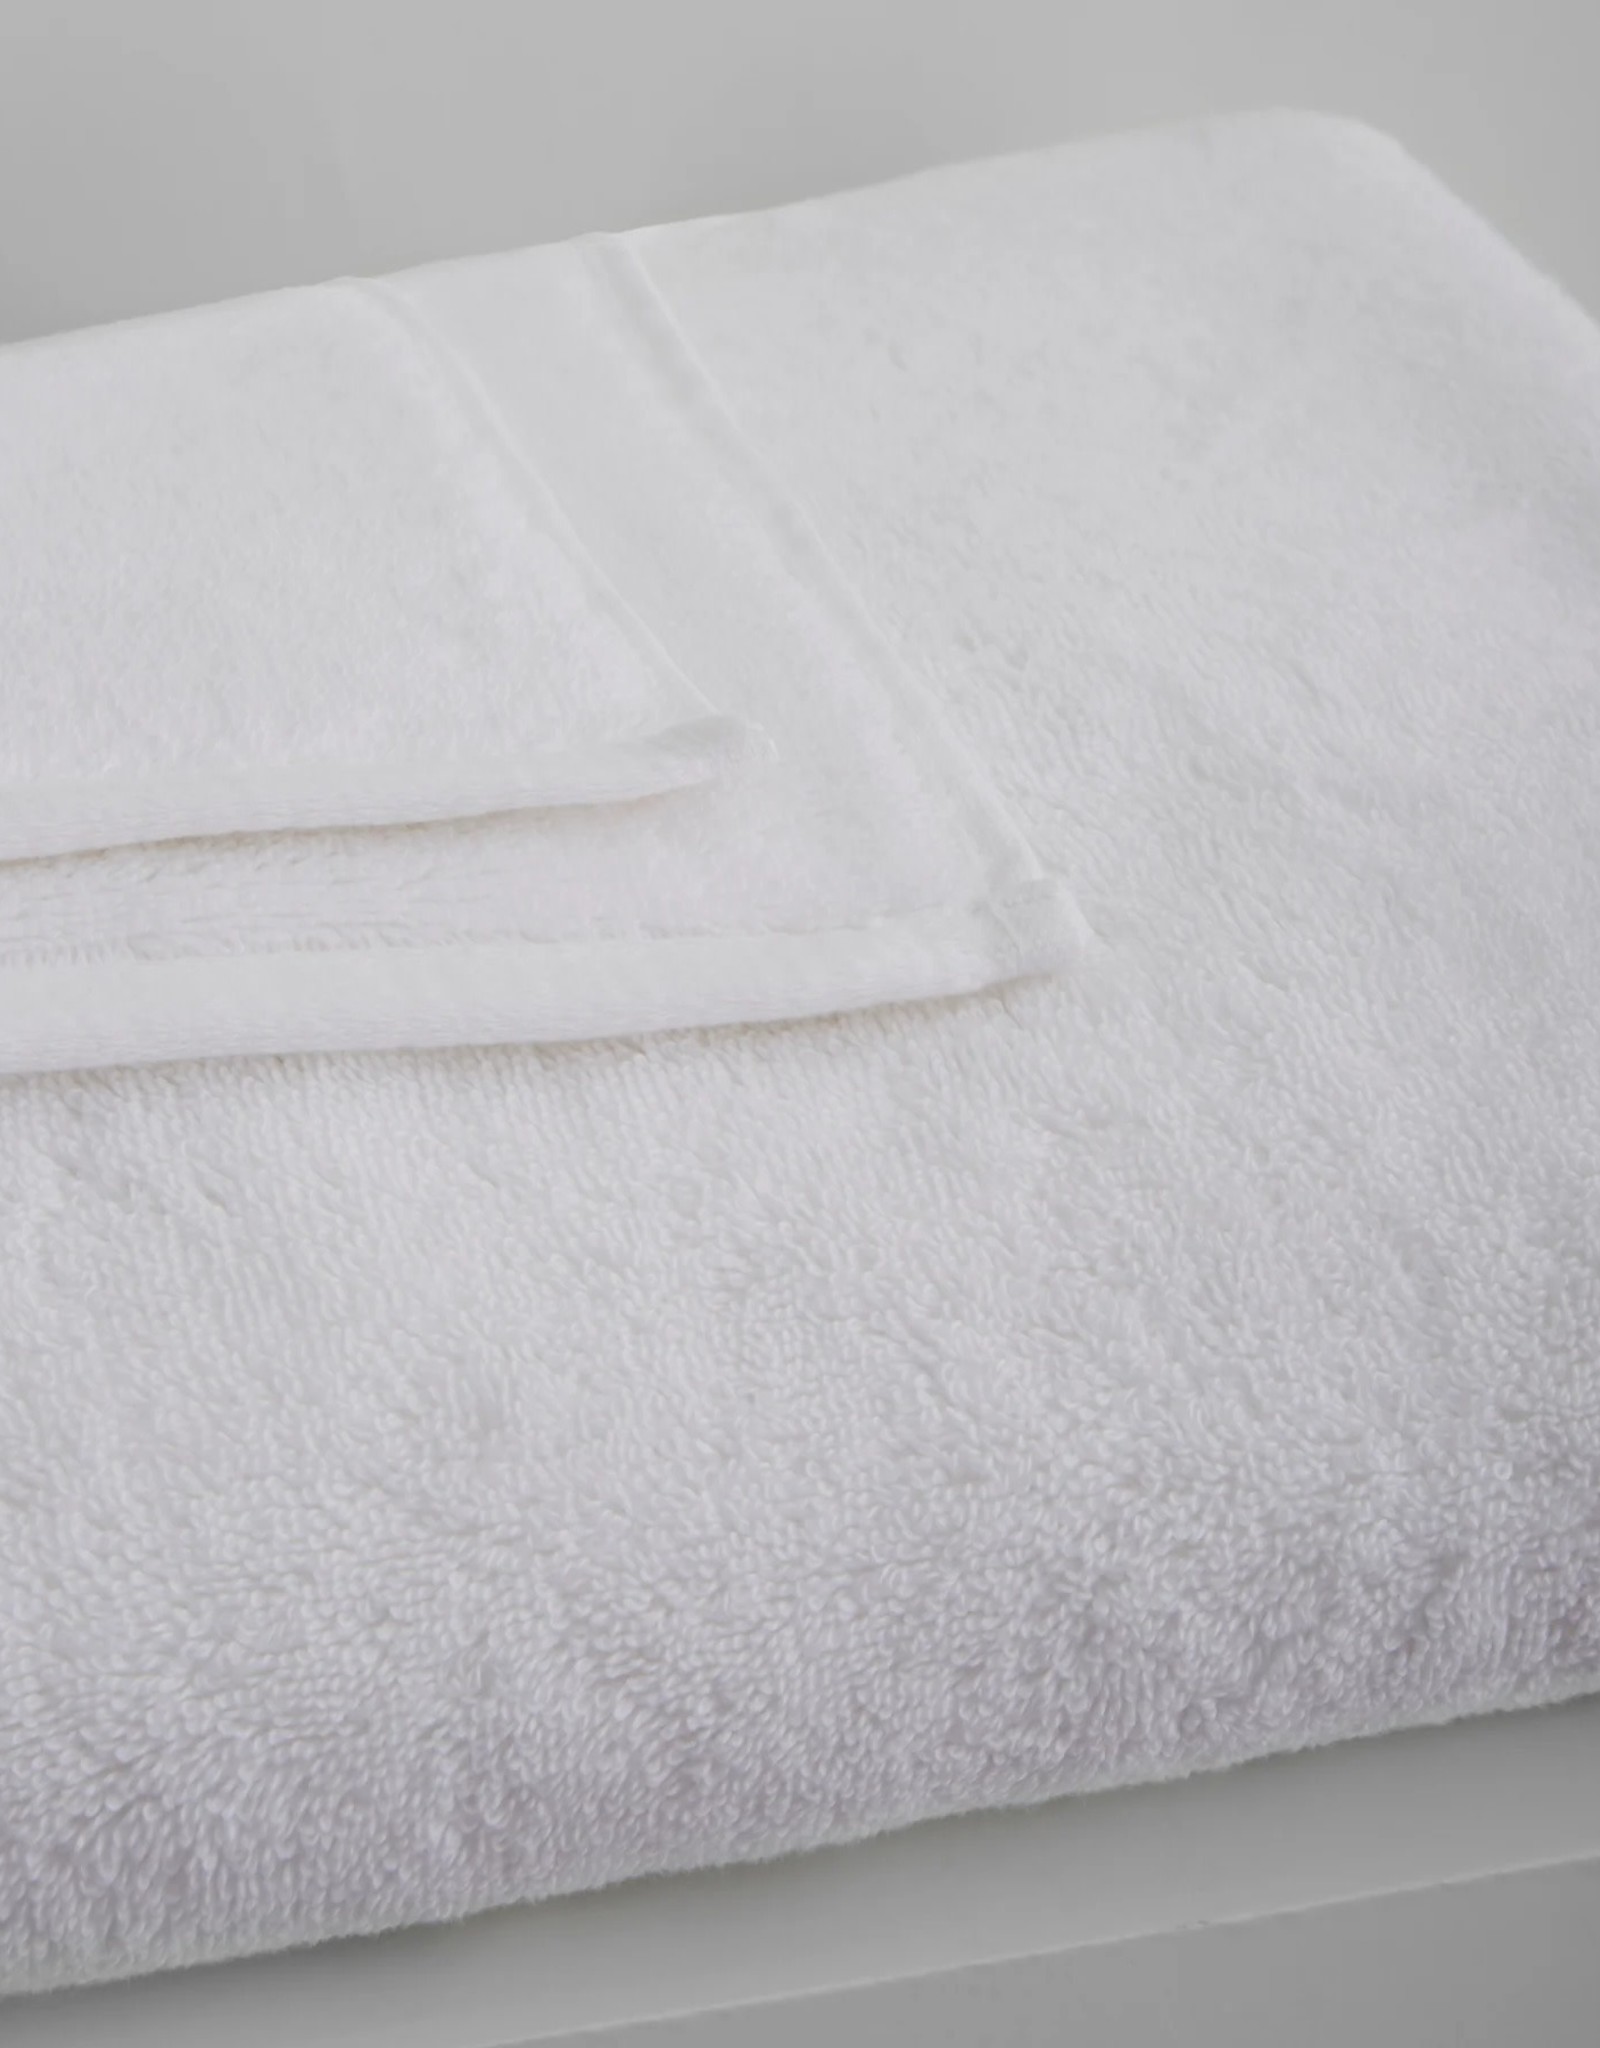 Adaste Home Inc Soft Touch Bath Towel, White